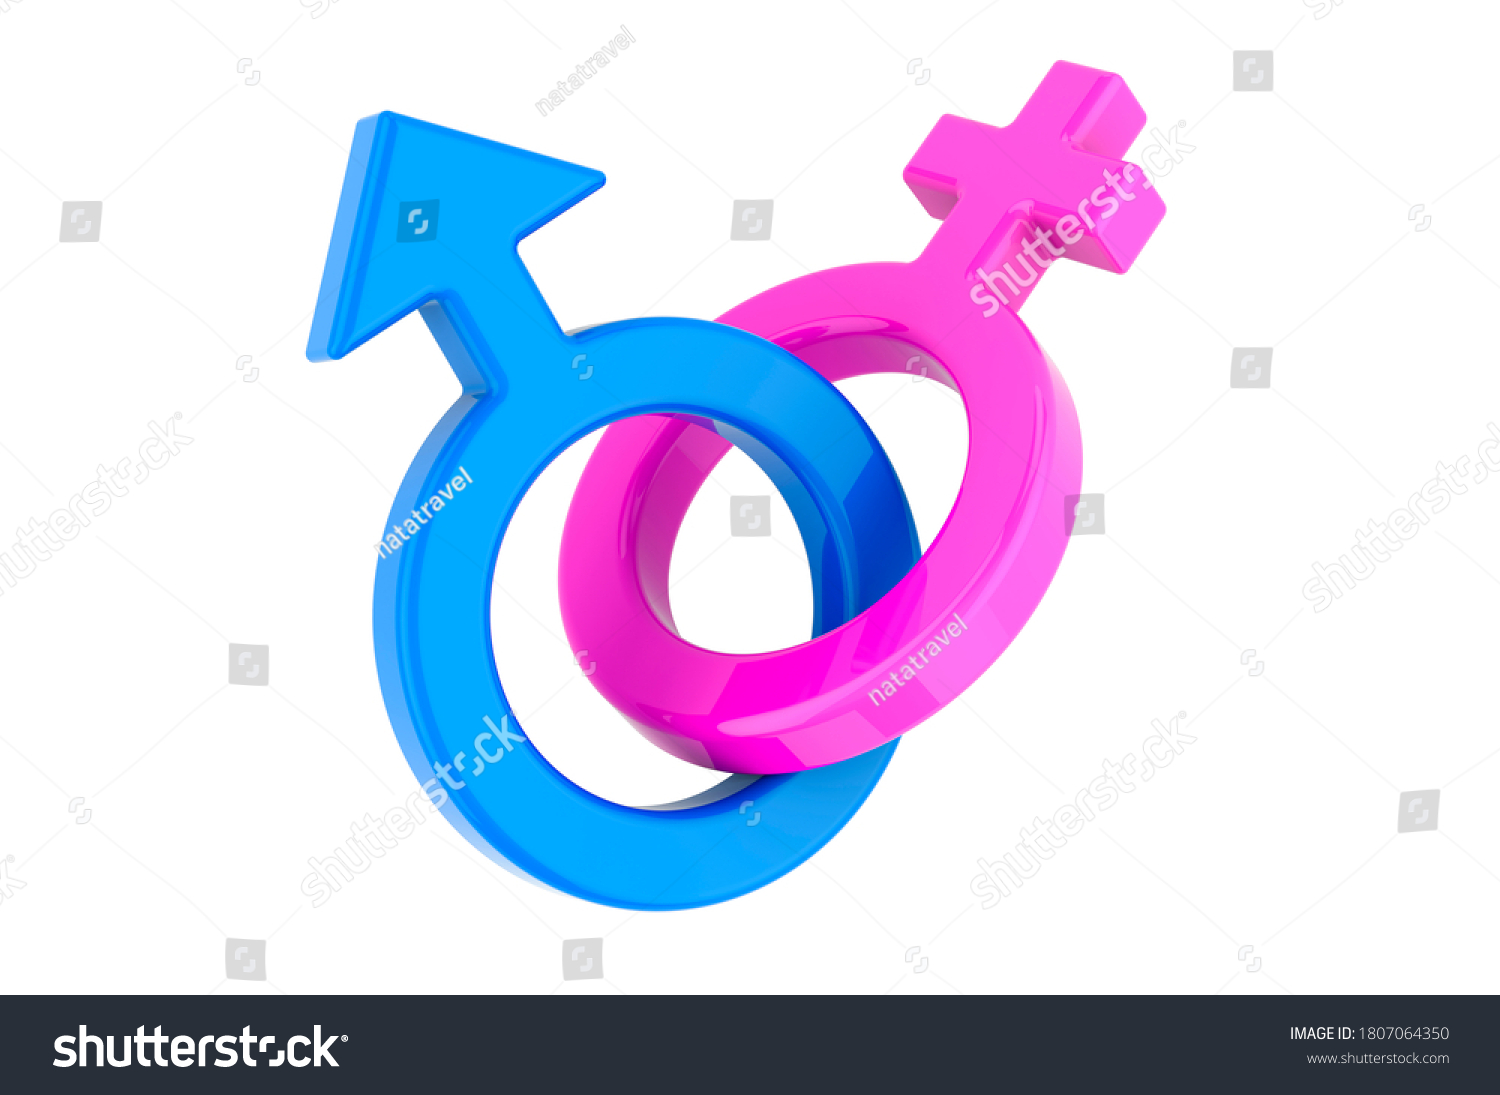 Female Male Gender Symbols Crossed 3d Stock Illustration 1807064350 Shutterstock